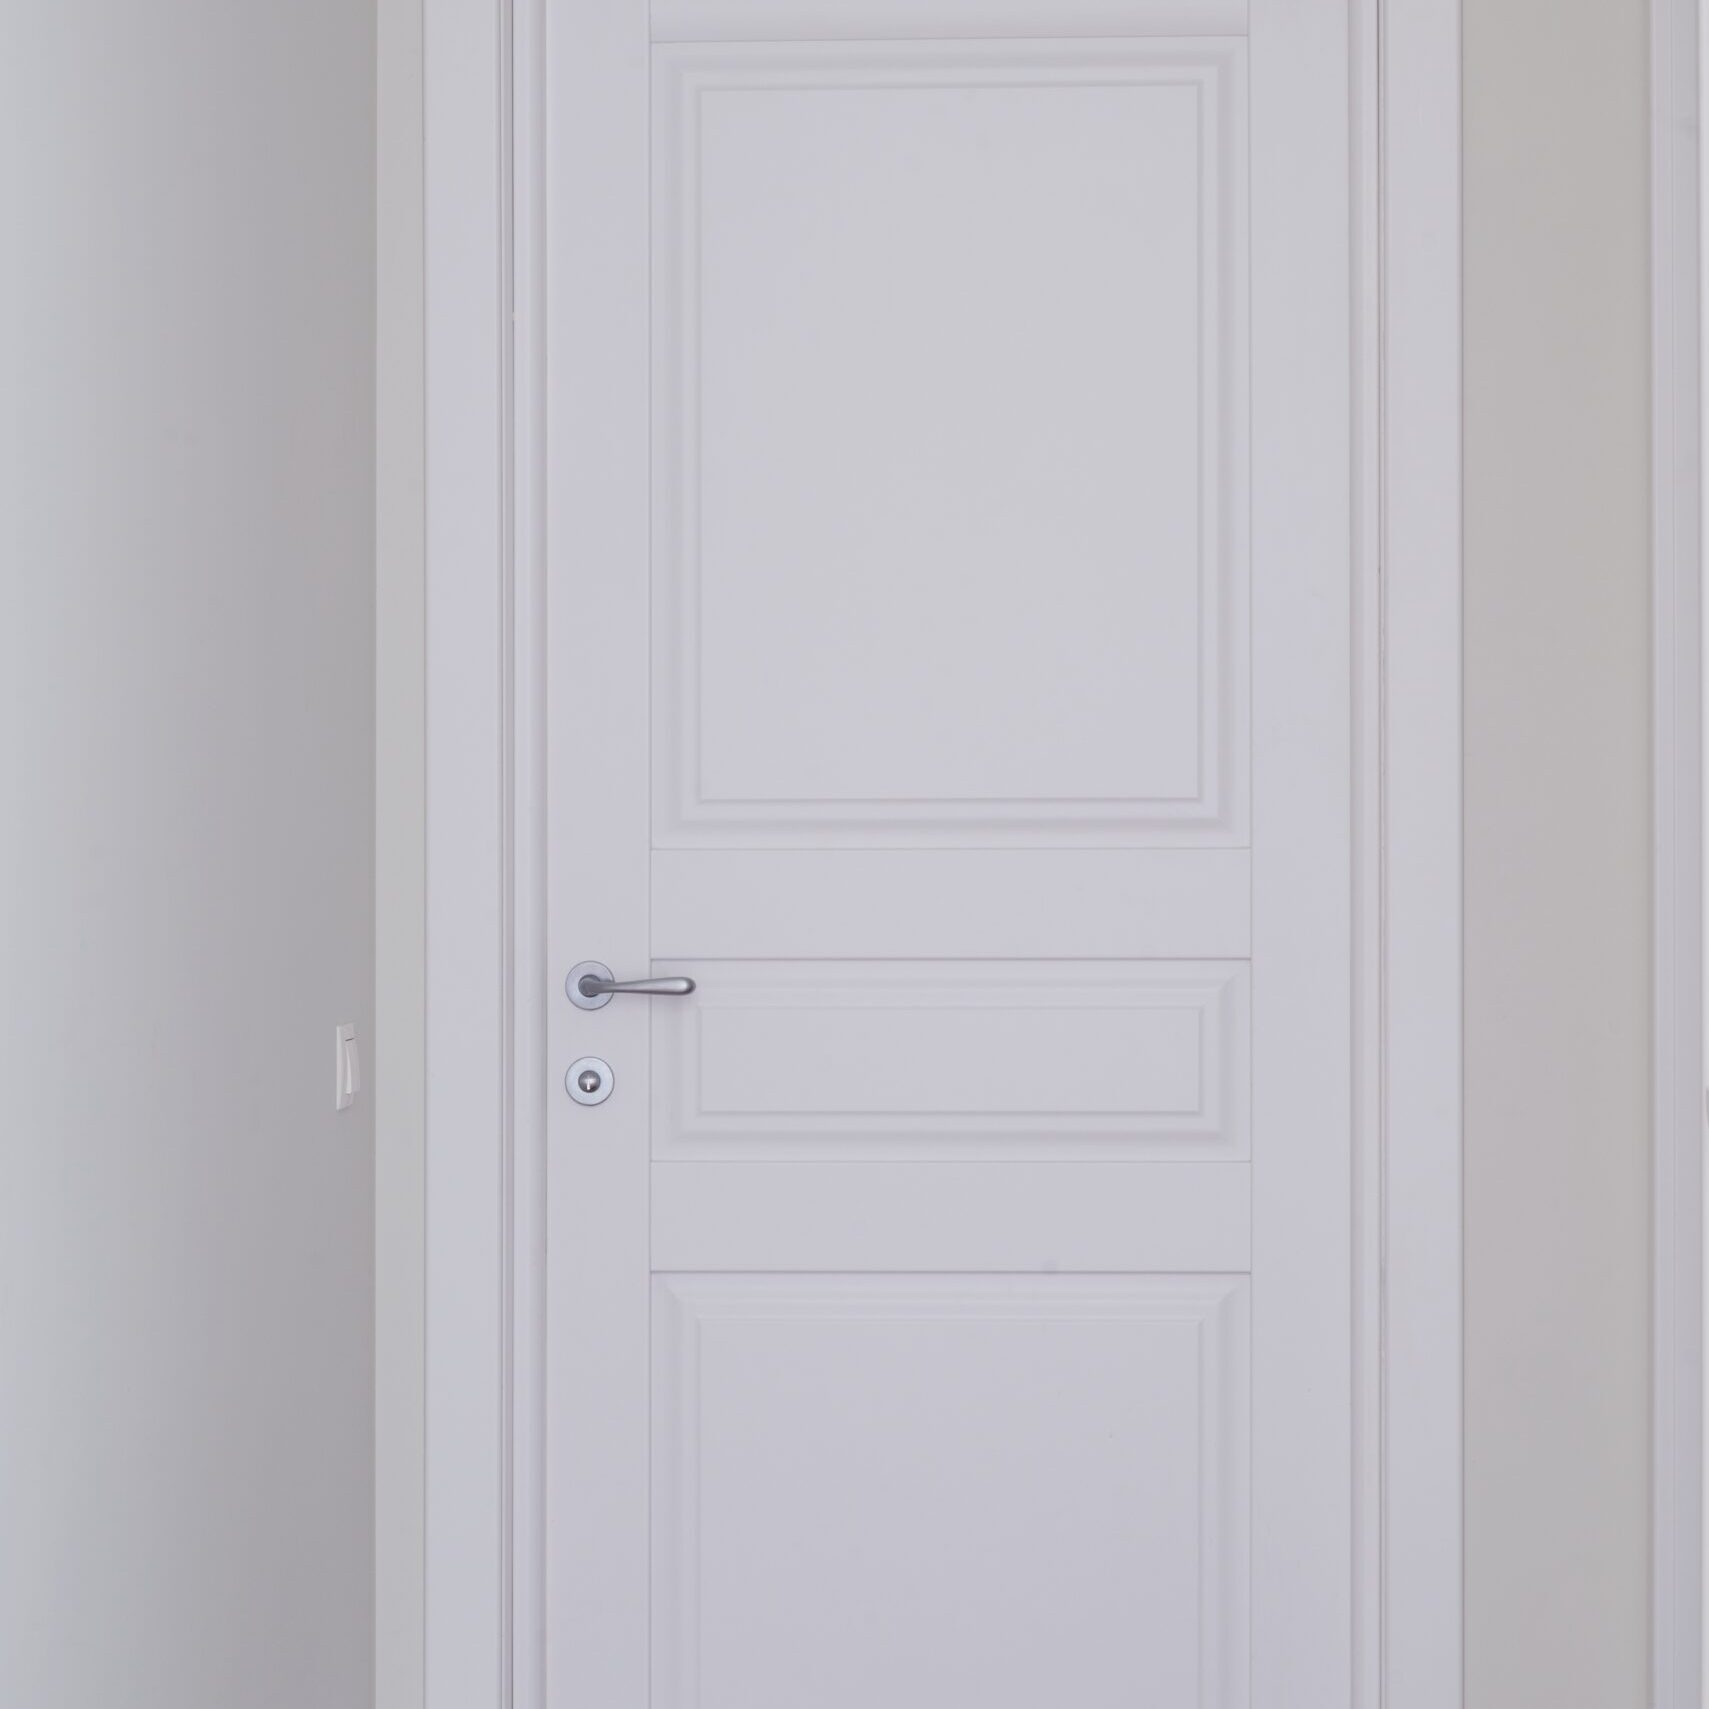 Closed white interior paint door in home interior.